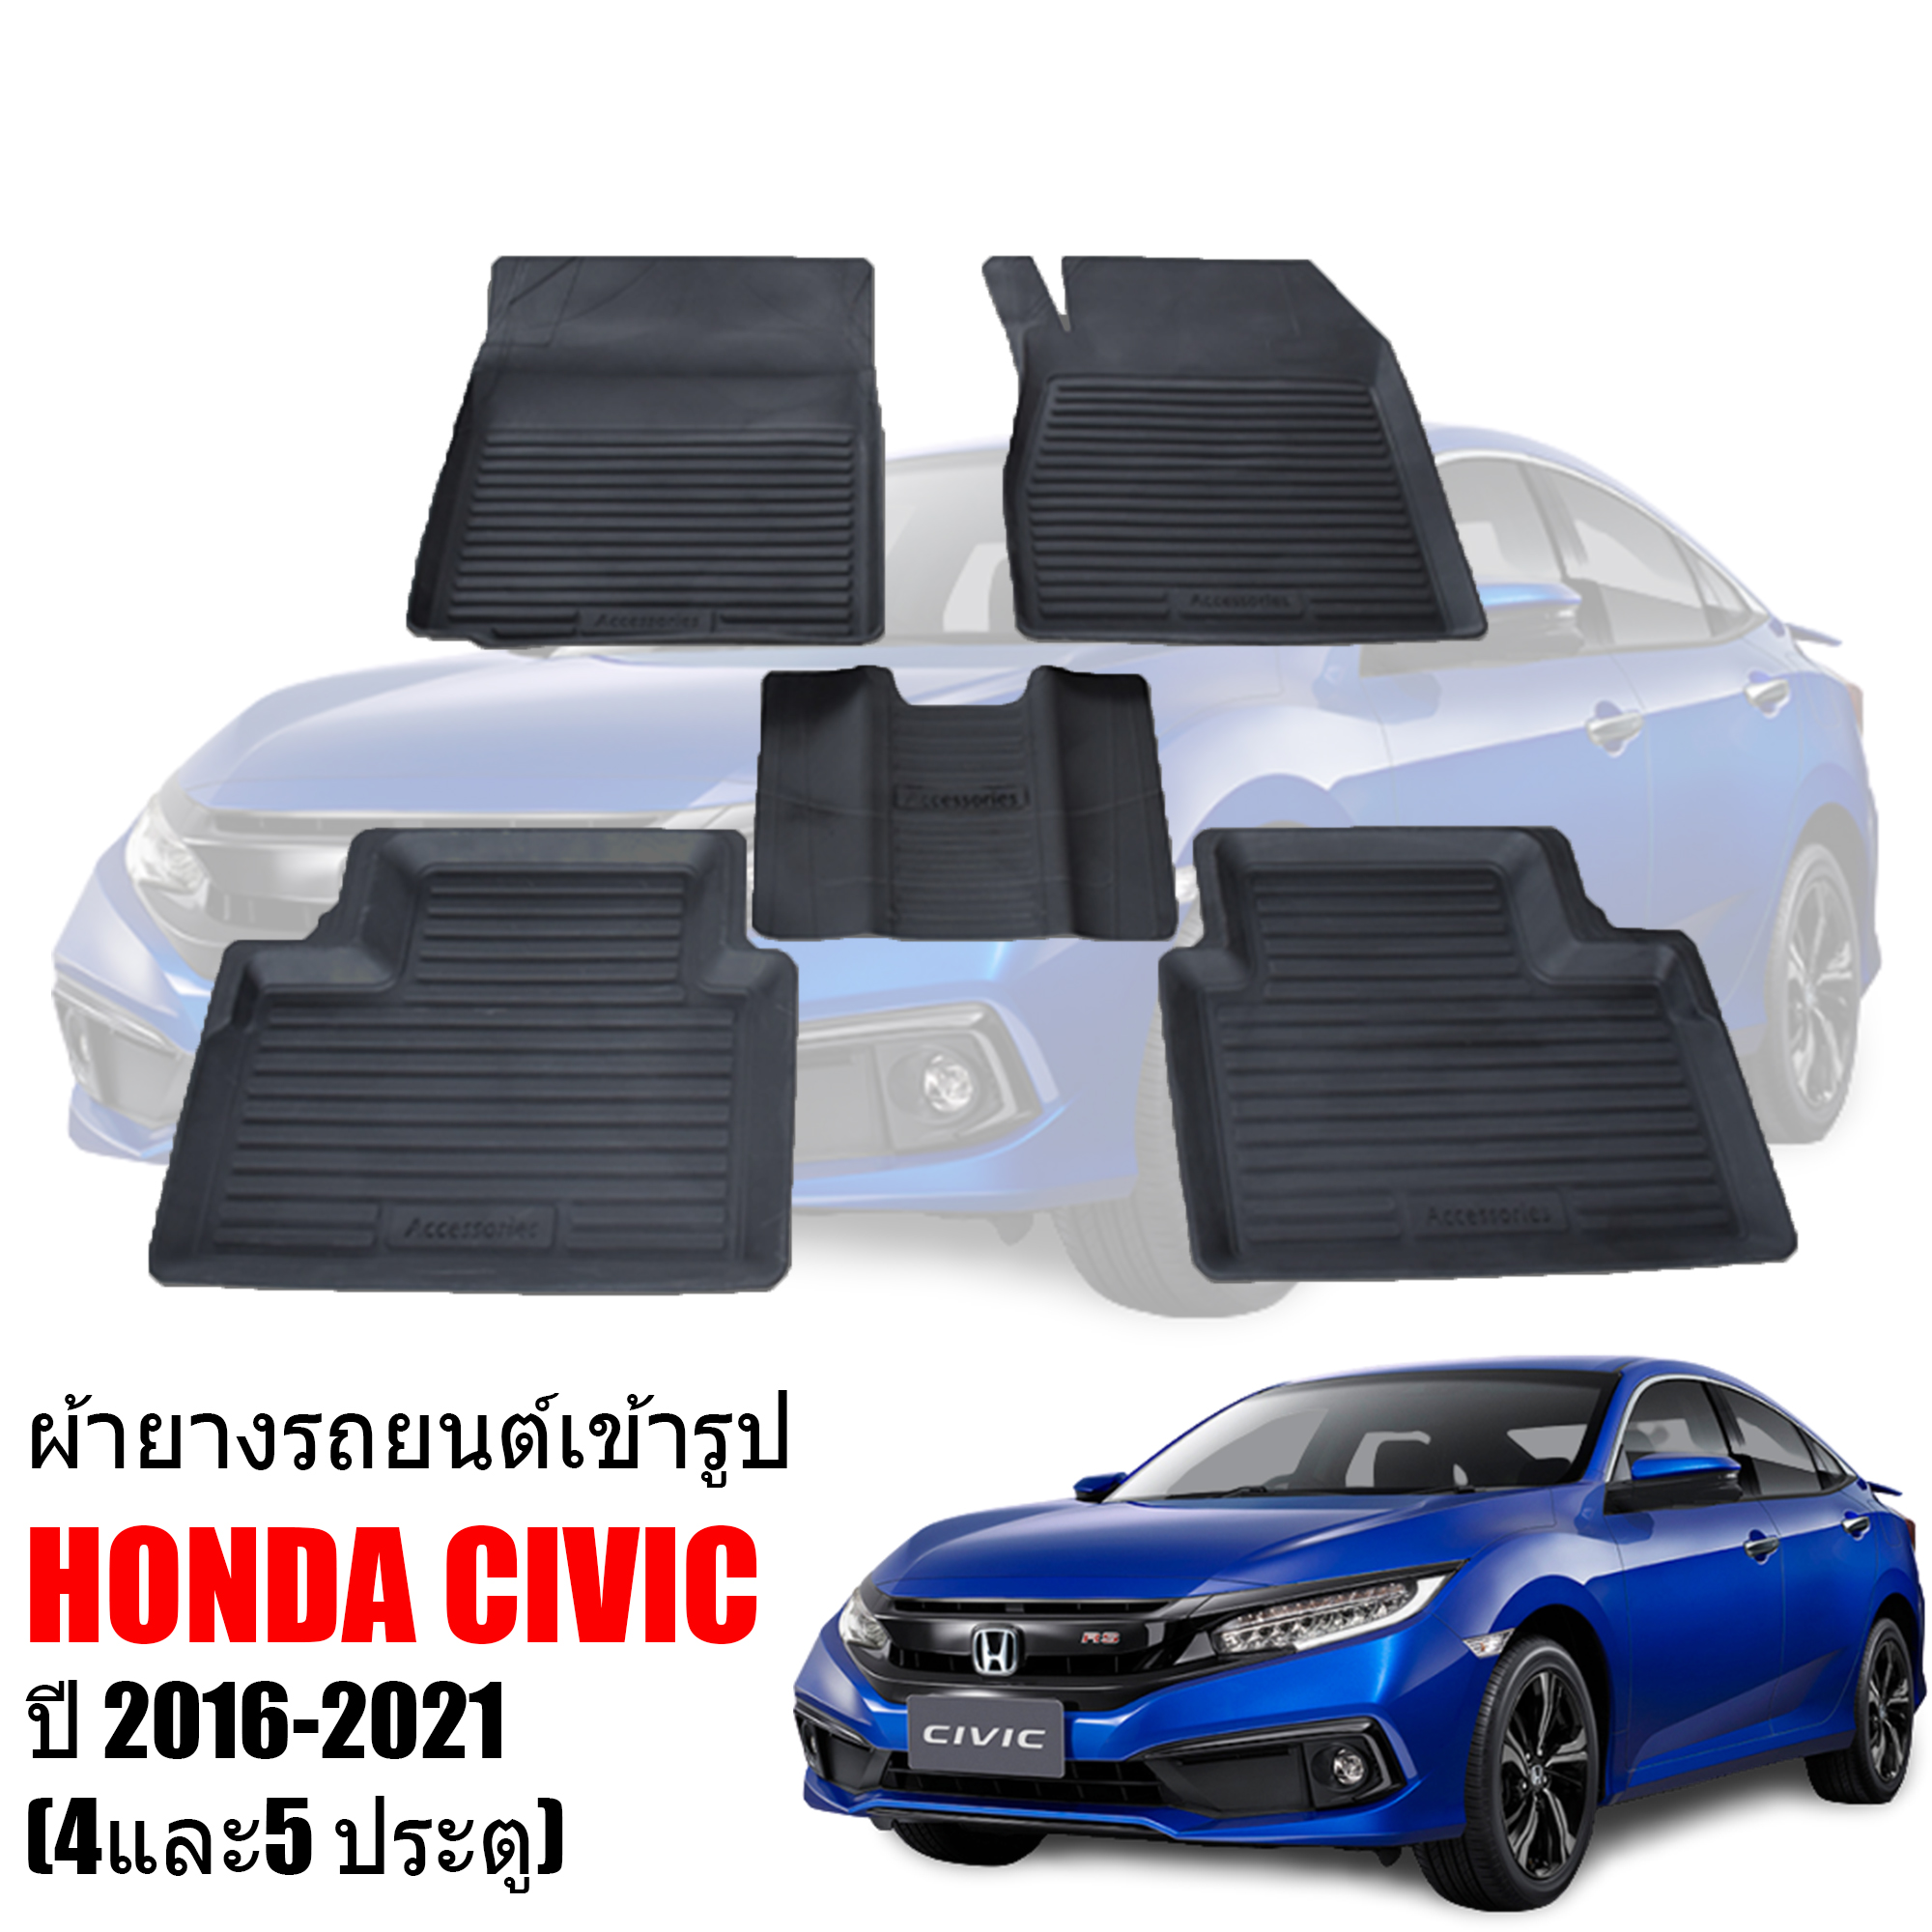 ผ้ายางรถยนต์เข้ารูป สำหรับ  HONDA CIVIC  2016-ปัจจุบัน ( CIVIC FC/FK ) พรมปูพื้นรถยนต์ แผ่นยางปูพื้นรถยนต์  ถาดยางปูพื้นรถเข้ารูป ยางปูพื้นรถยนต์  ผ้ายางปูพื้นรถ พรมยางปูพื้นรถยนต์ตรงรุ่น